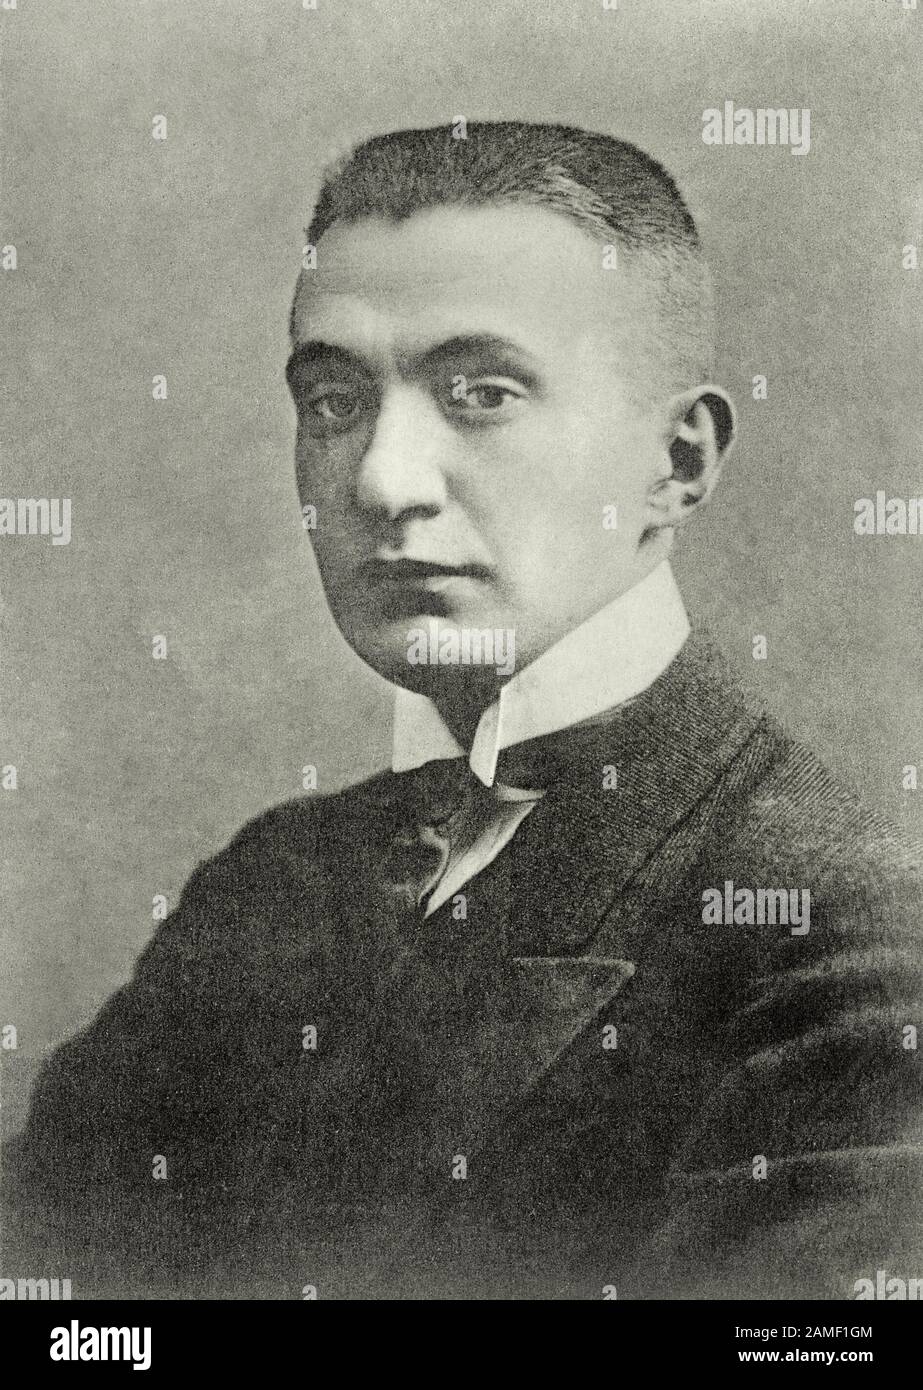 Alexander Fjodorowitsch Kerensky (1881 - 1970) war ein russischer Jurist und Revolutionär, der eine politische Schlüsselfigur in der russischen Revolution von 1917 war. Stockfoto